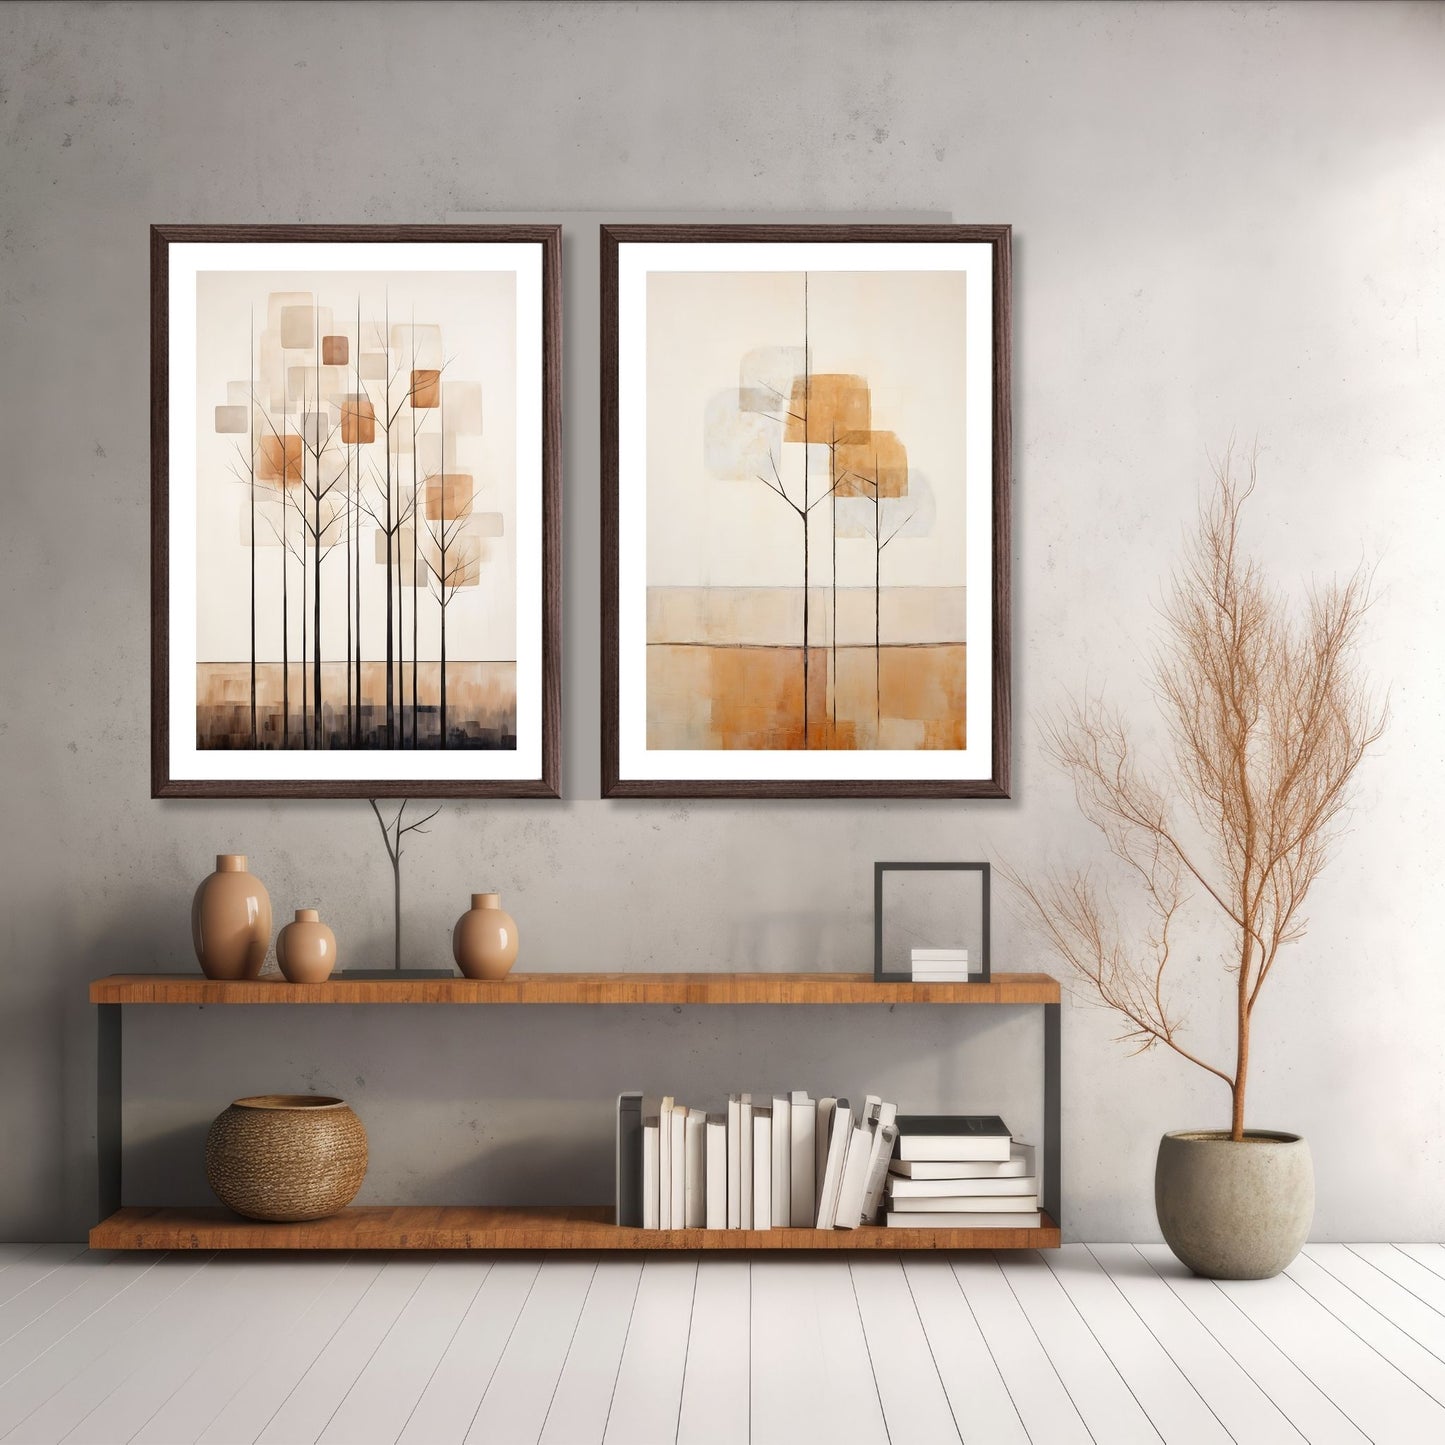 Abstract Forest - grafisk og abstrakt motiv av høye, slanke trær og skog i rust- og beige fargetoner Illustrasjon av motiv 7 og 8 i brun ramme.